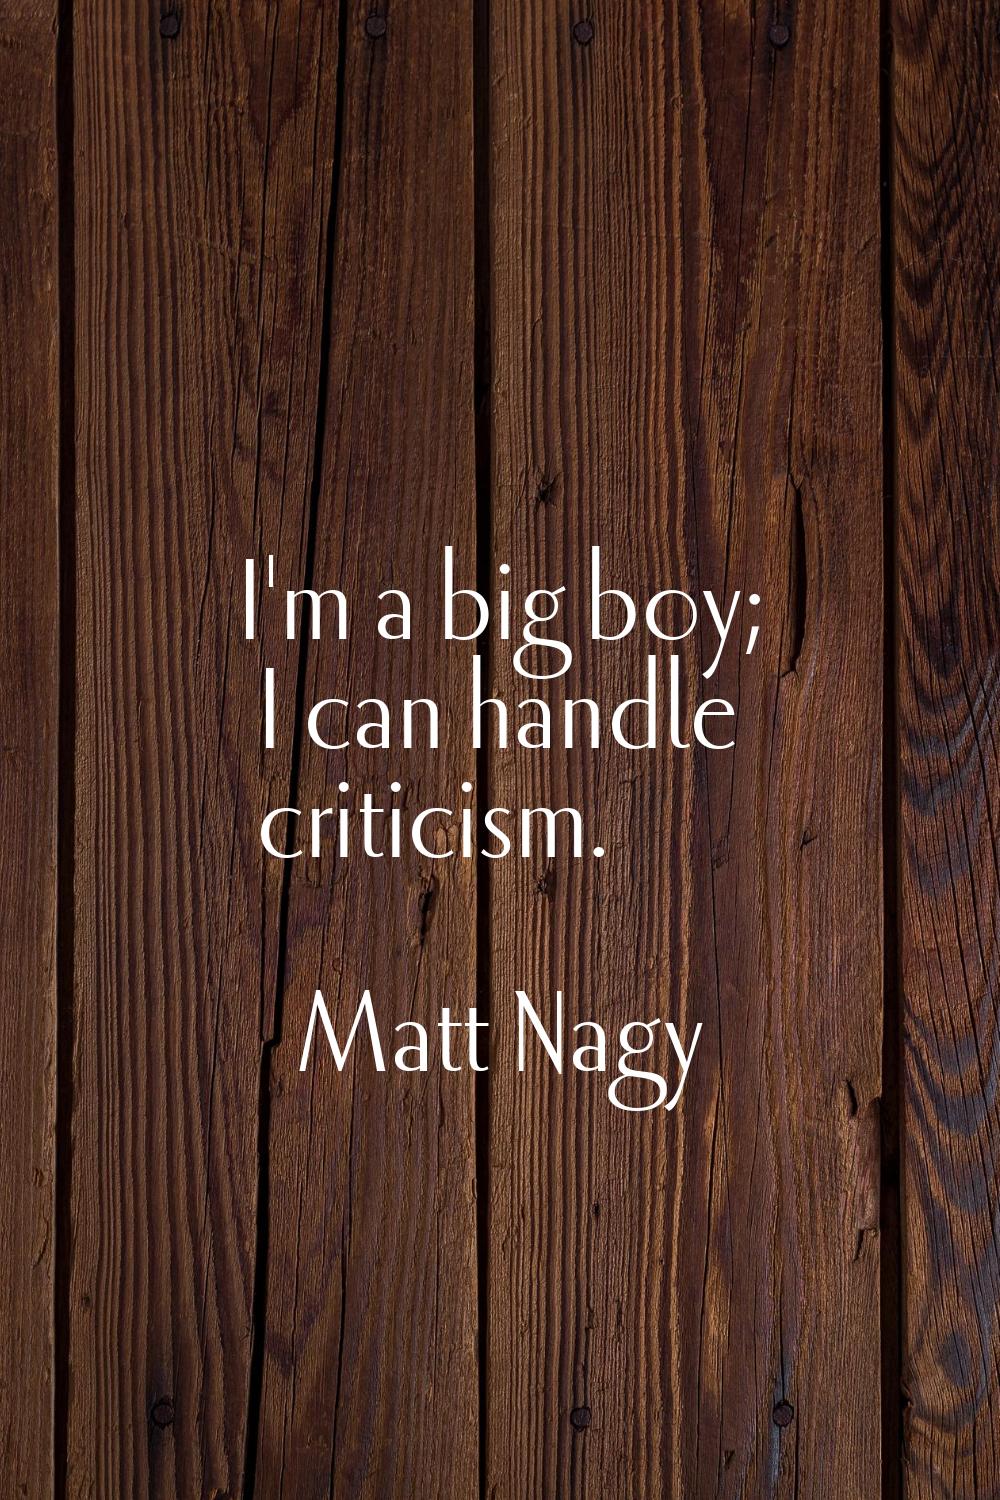 I'm a big boy; I can handle criticism.